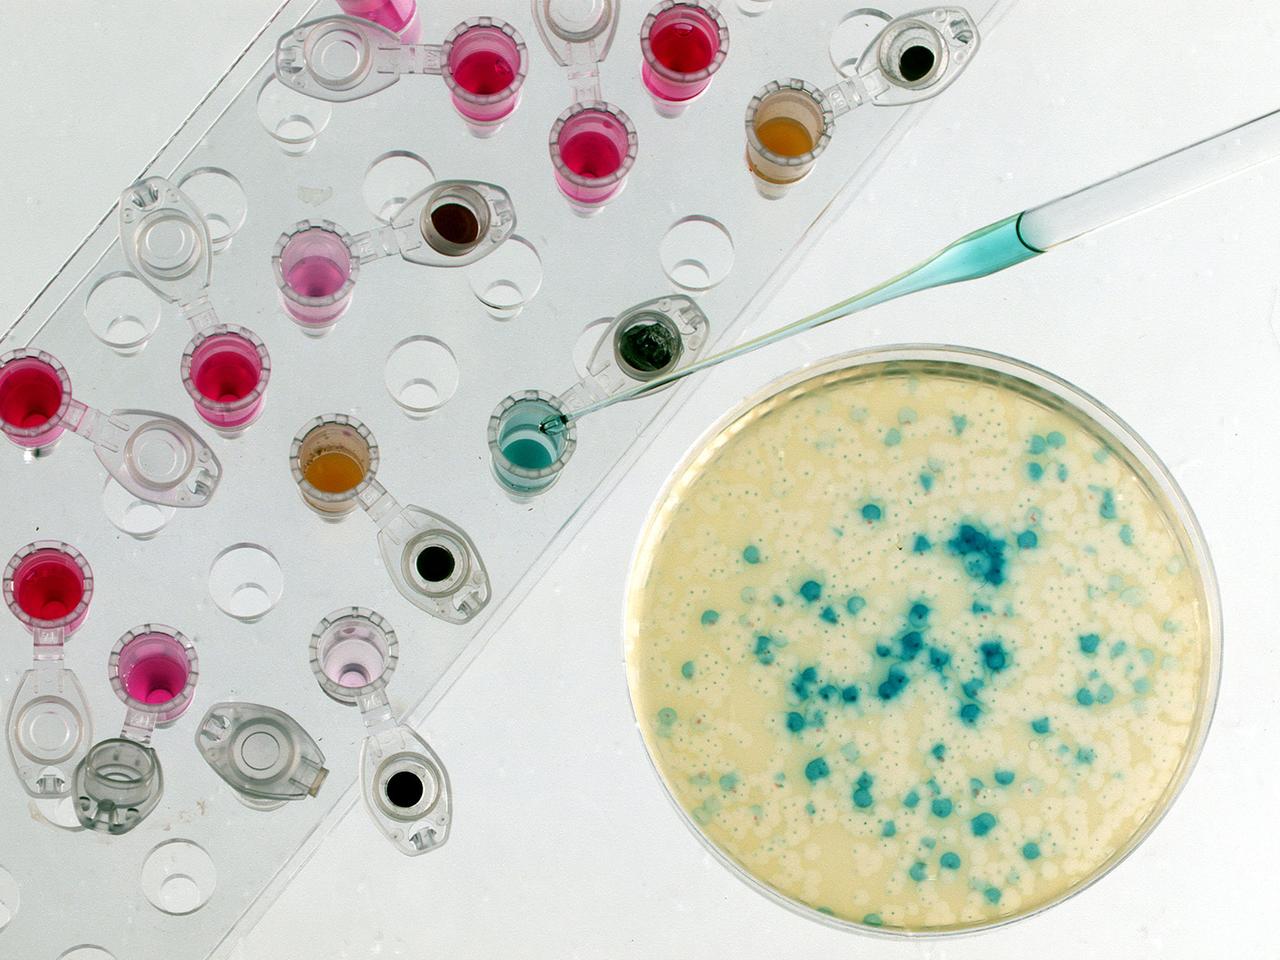 Eine Petrischale mit Bakterienkulturen zur Genvermehrung und Reaktionsgefäße mit Enzym- und Salzlösungen für gentechnische Arbeiten